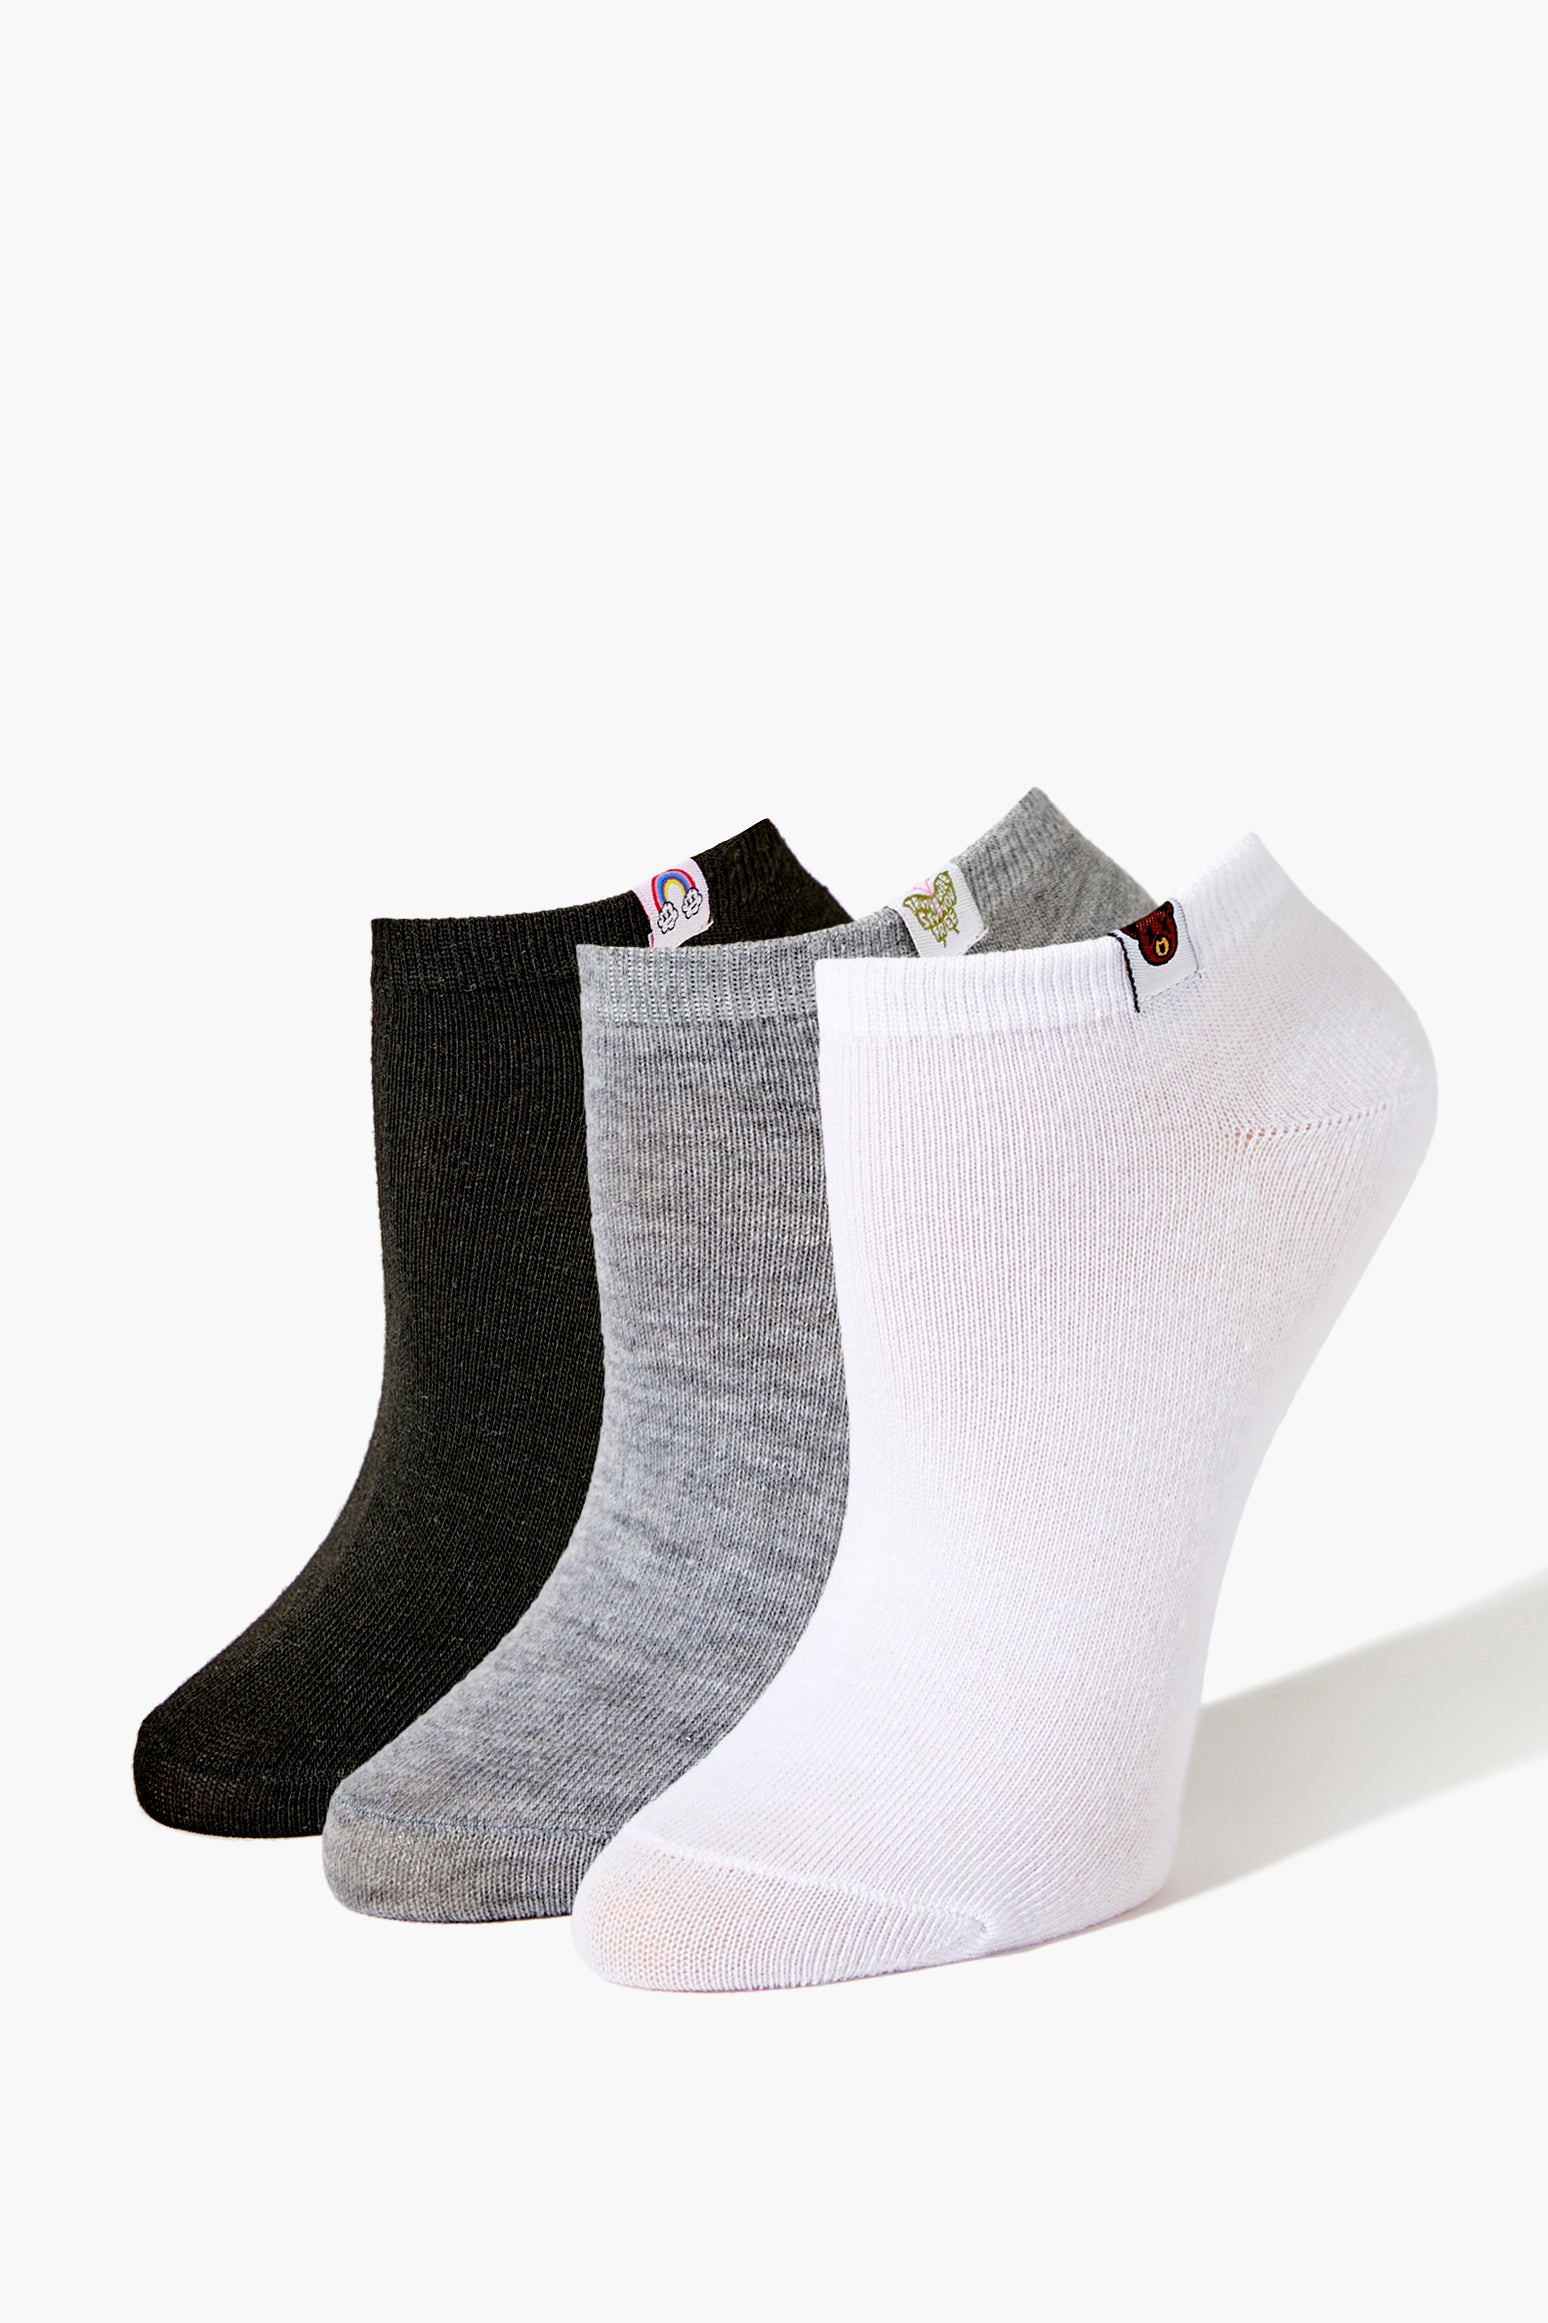 Whitemulti Assorted Ankle Socks Set - 3 pack